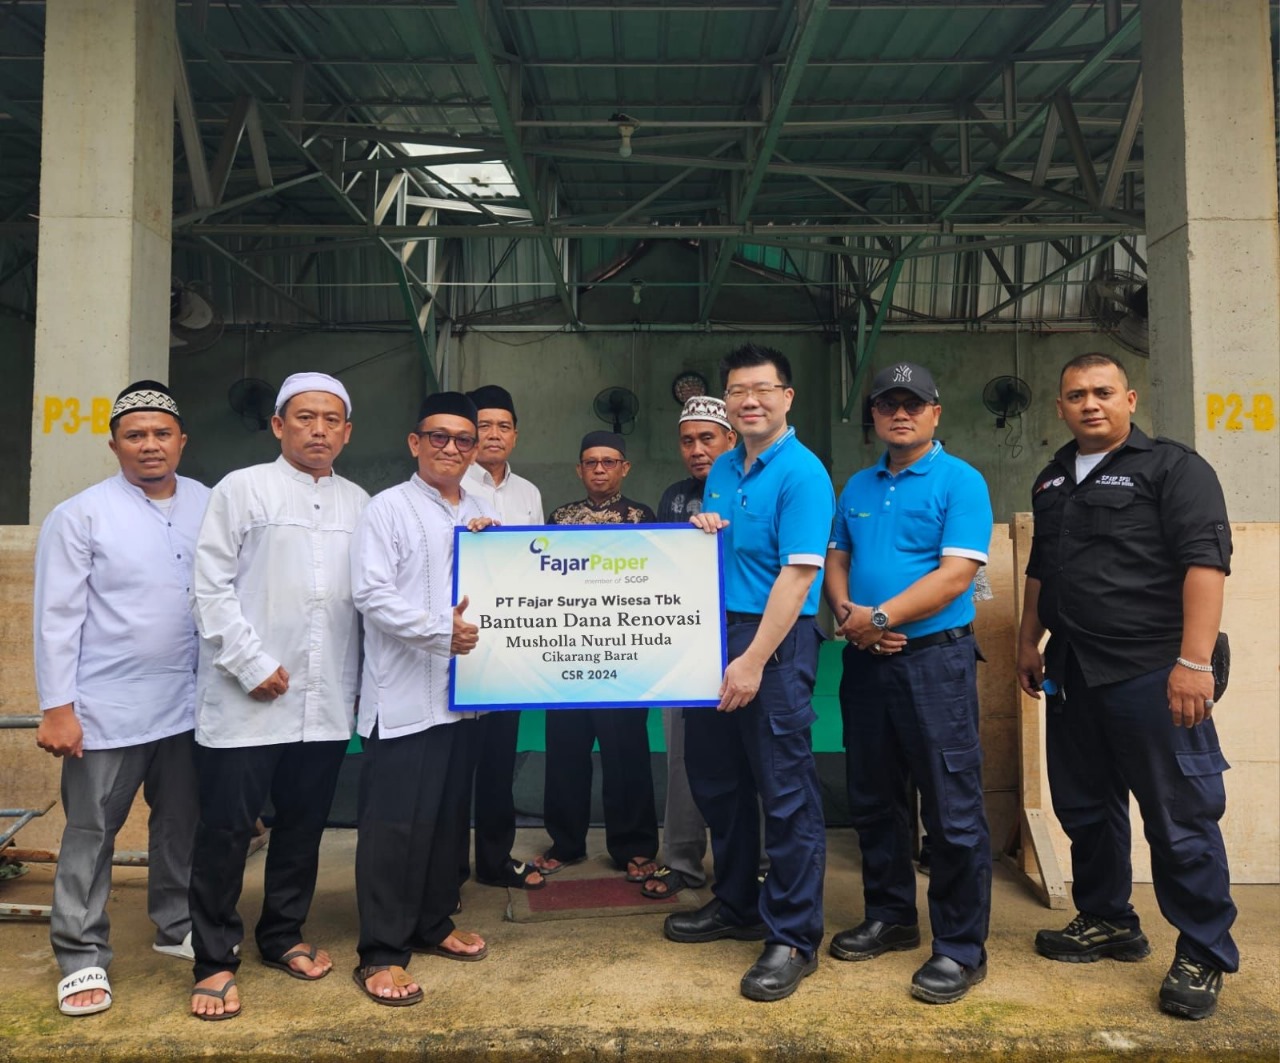 Fajar Paper Beri Dukungan Dana untuk Pembangunan Mushola Nurul Huda di Desa Telaga Murni